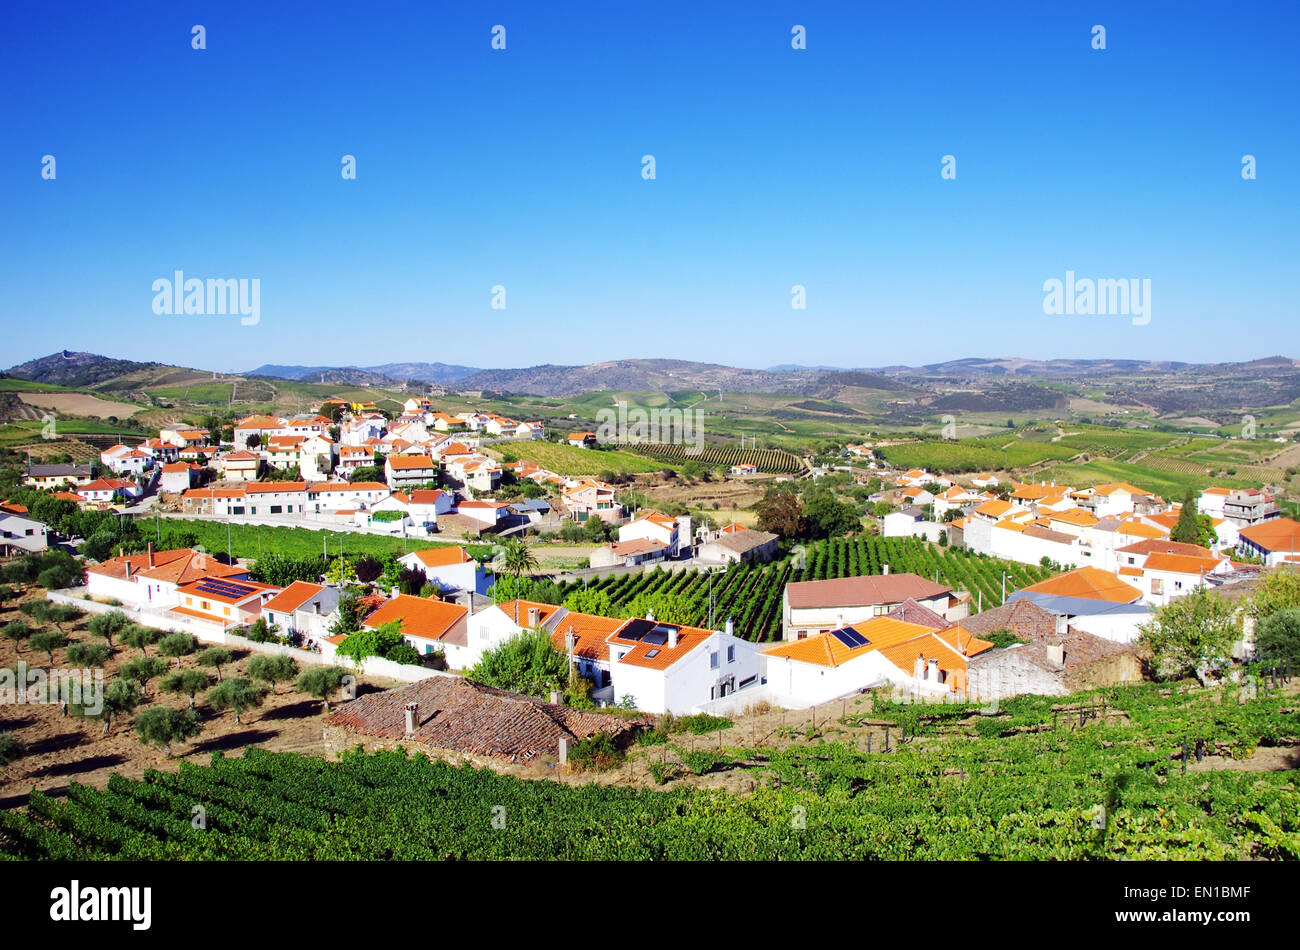 Village de la vallée du Douro, Portugal Banque D'Images